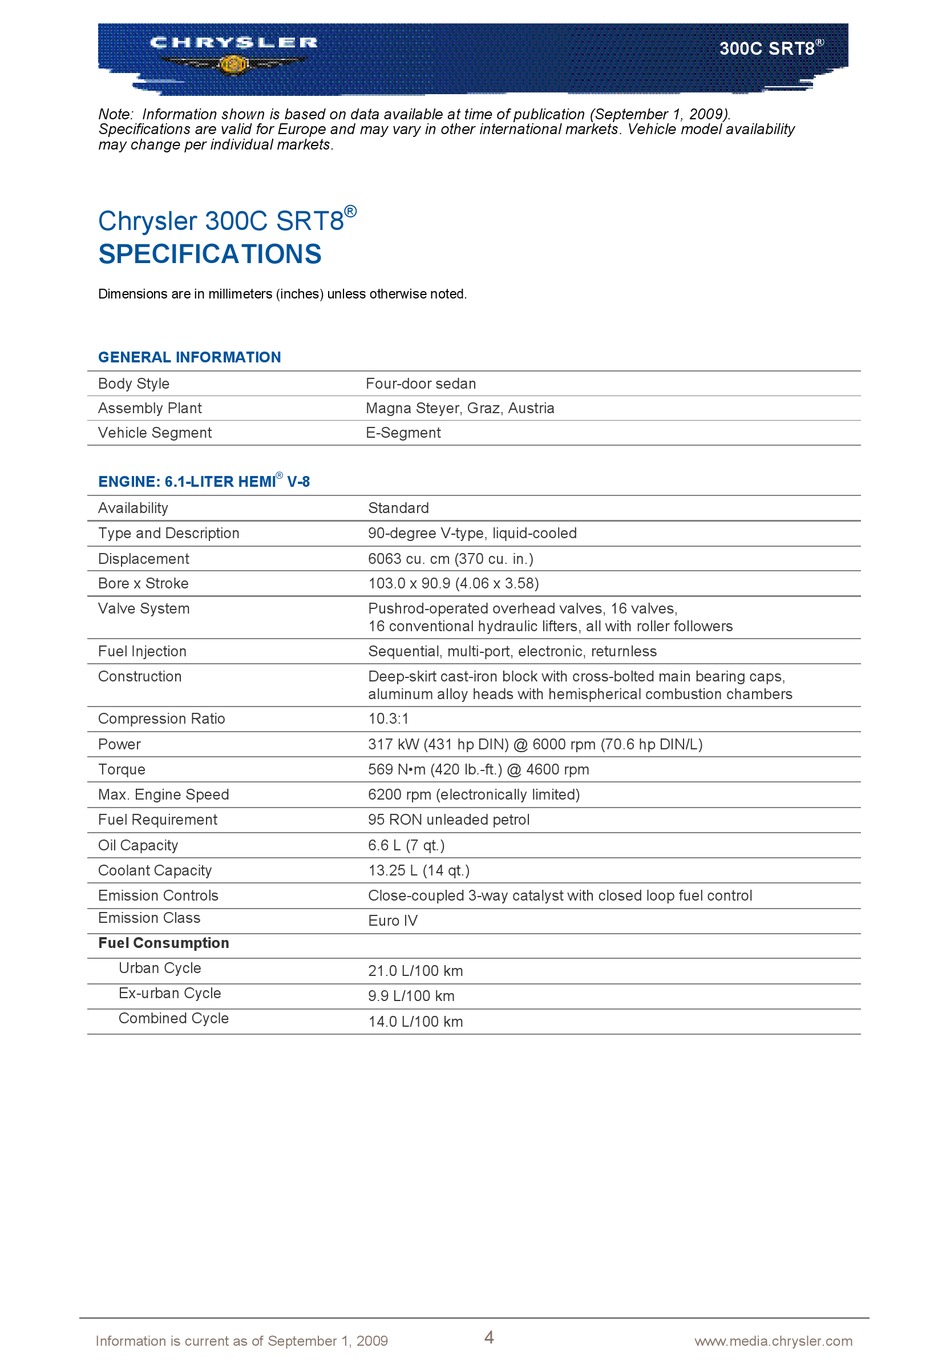 CHRYSLER 300C SRT8 2009 SPECIFICATION Pdf Download